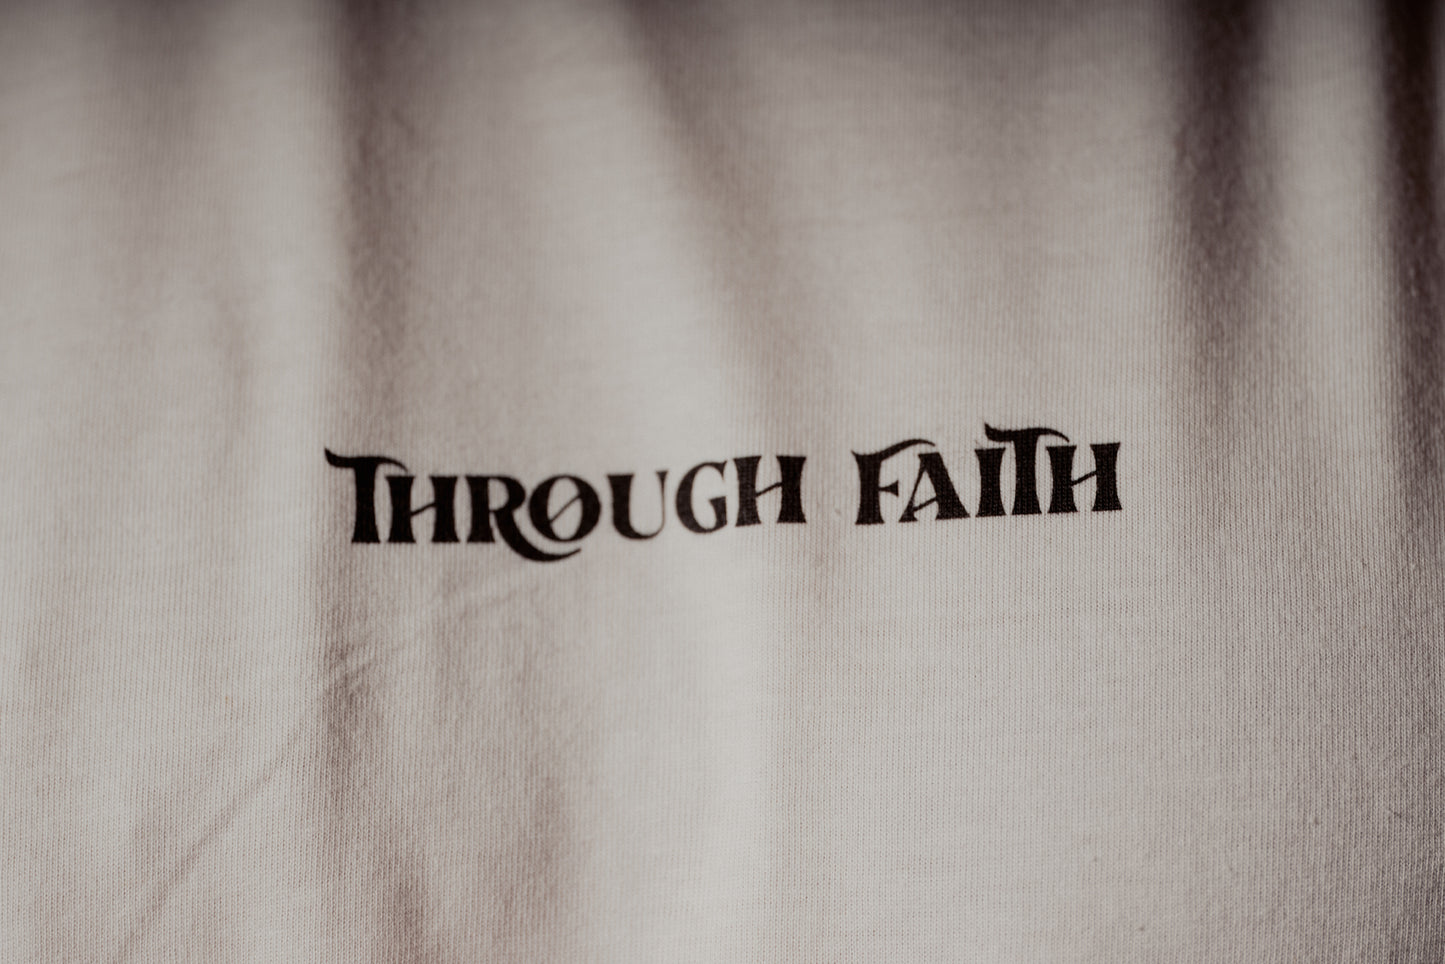 Through Faith